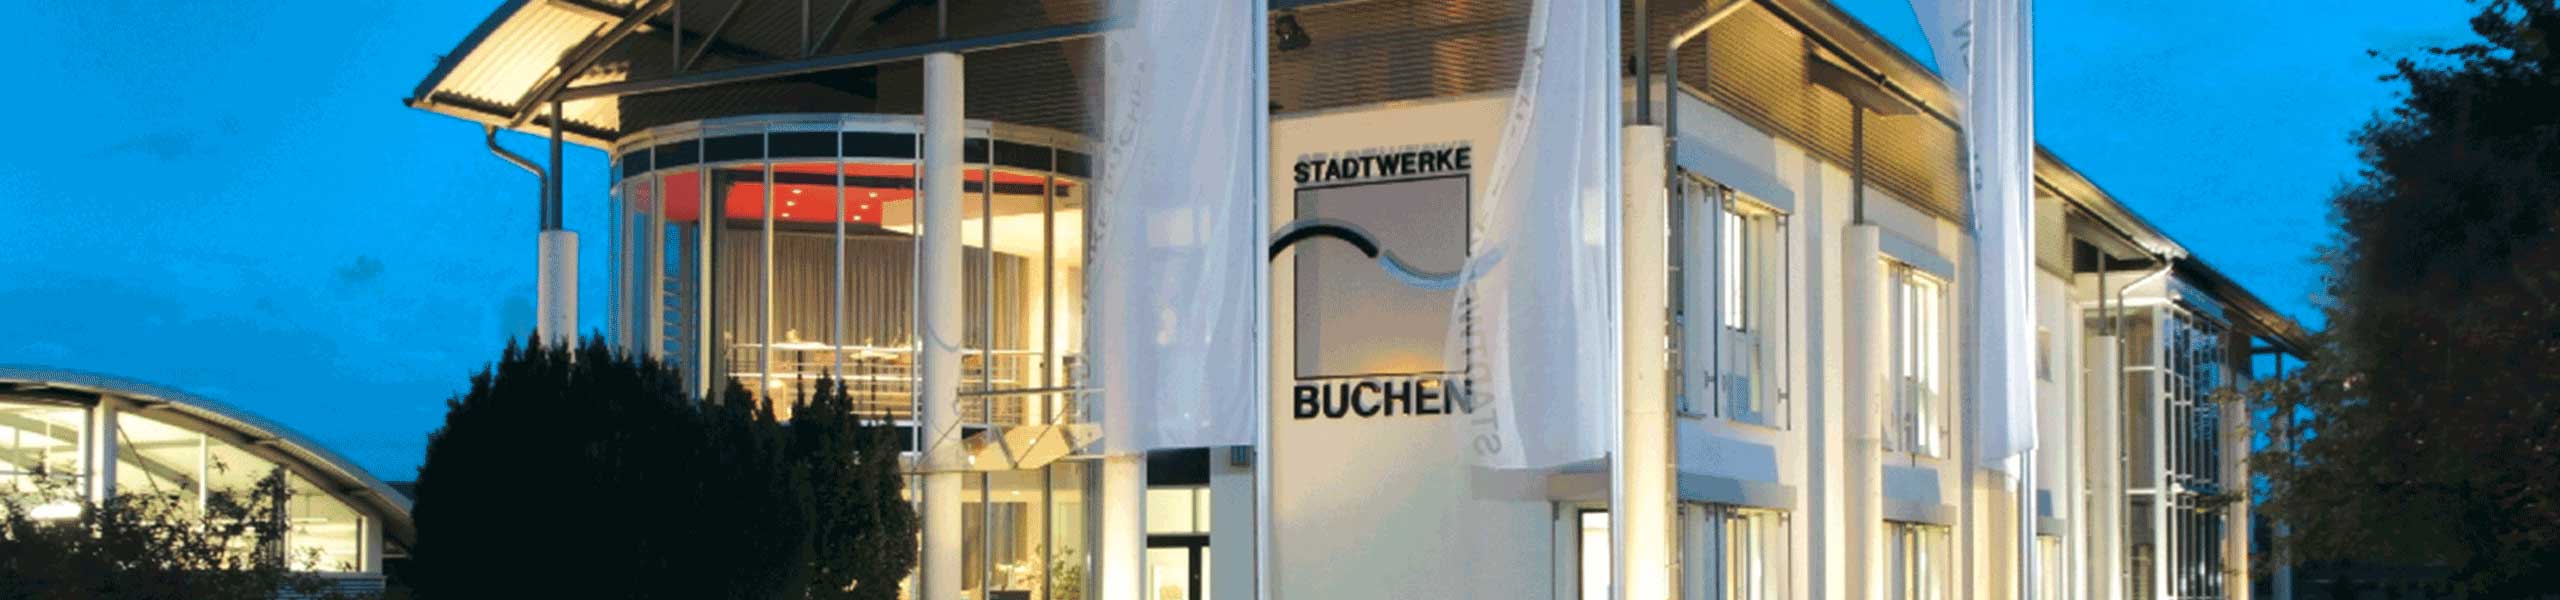 Stadtwerke Buchen GmbH & Co KG - Wasserspender an Jakob-Mayer-Grundschule übergeben